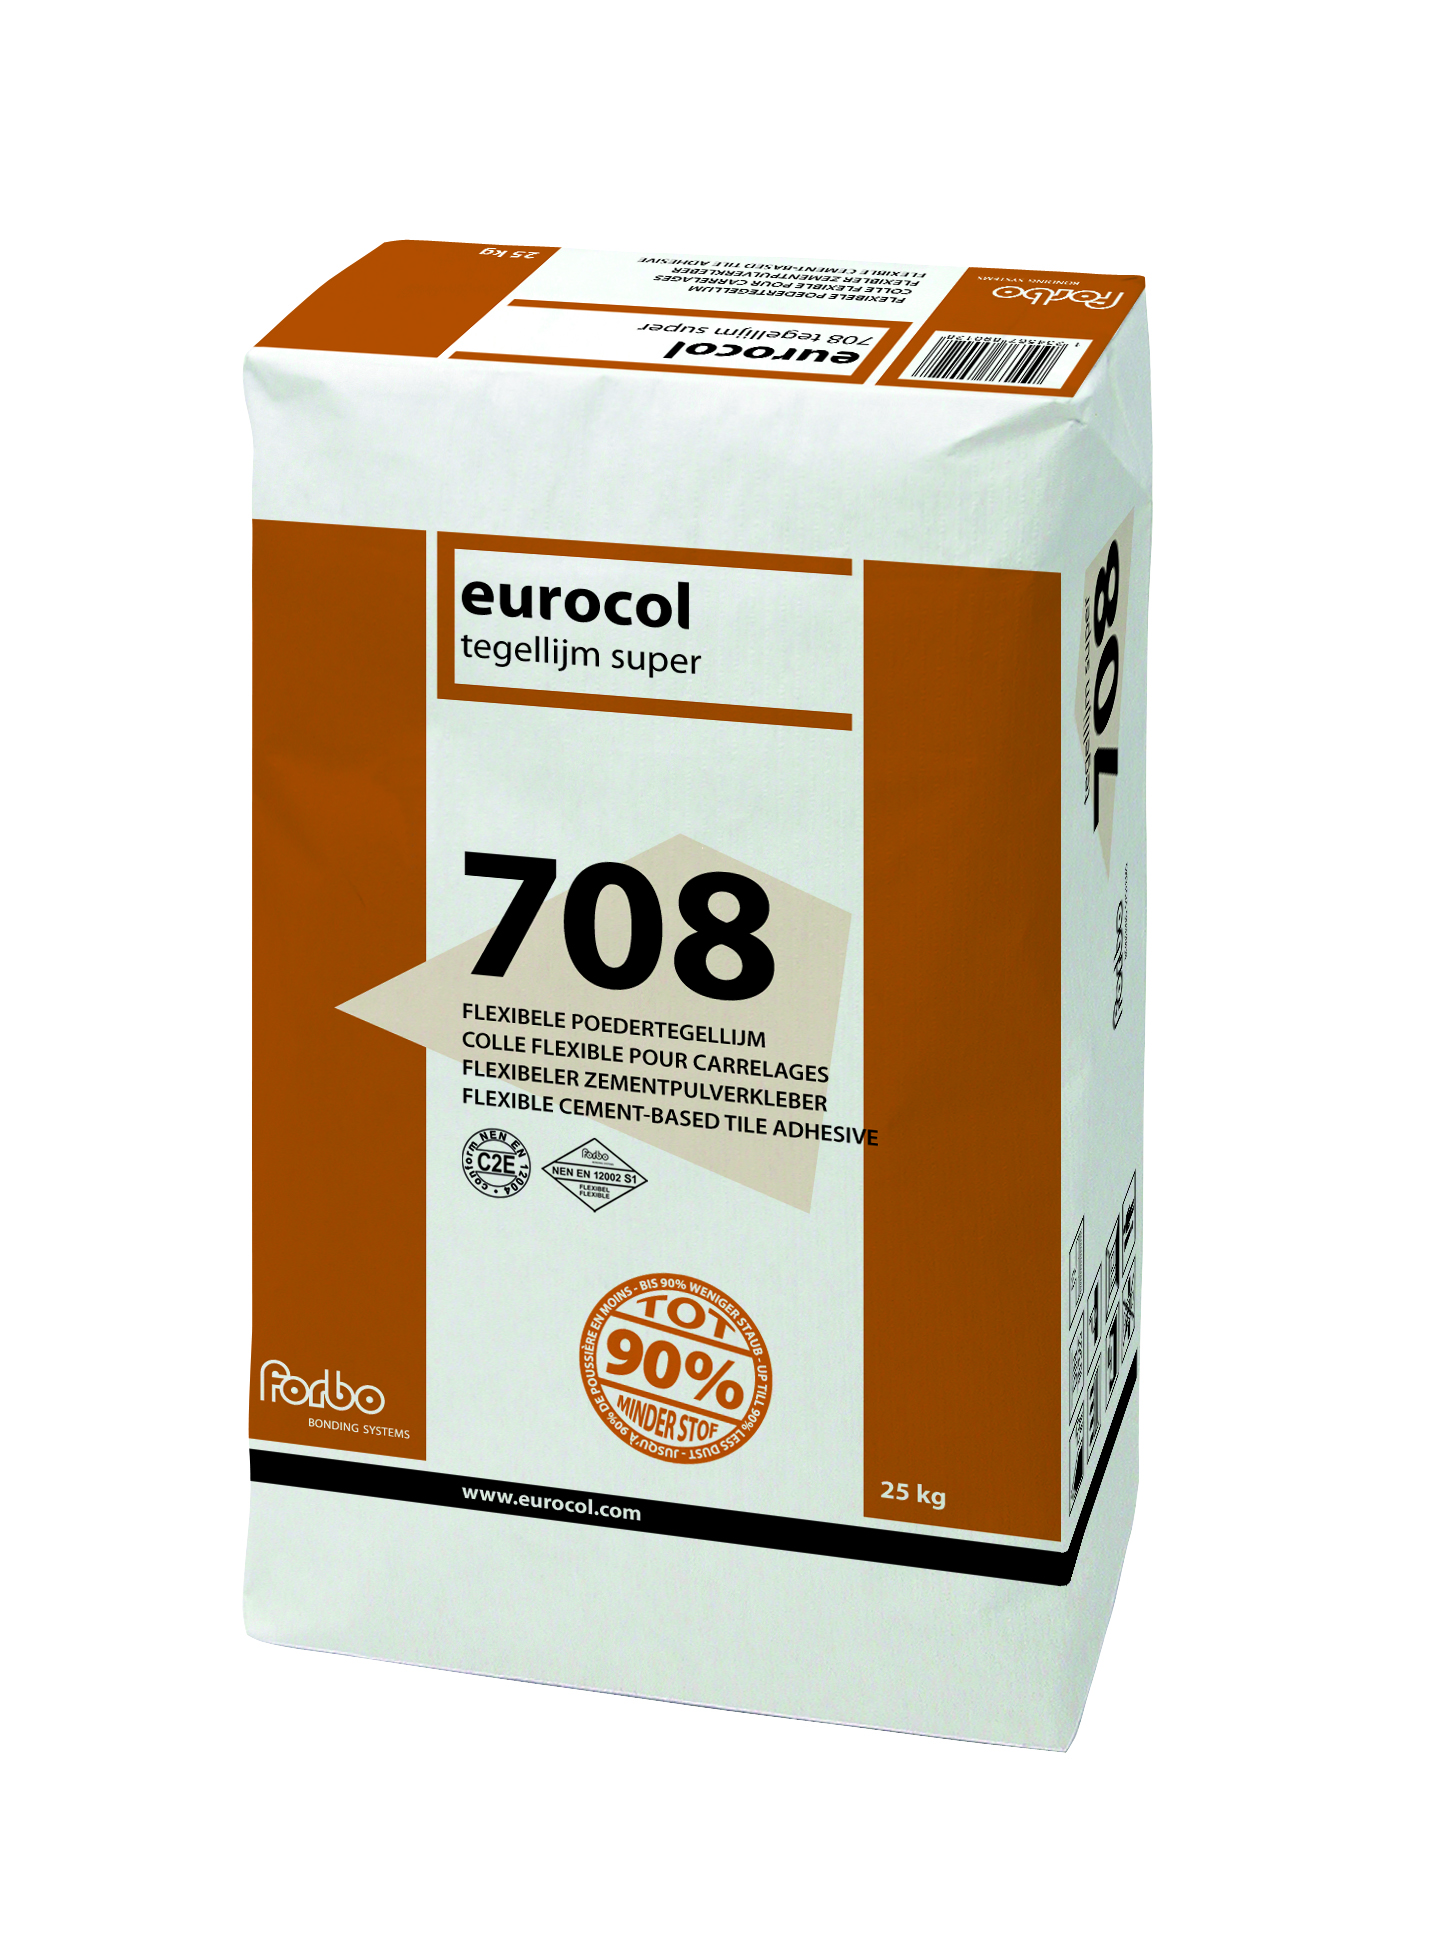 Eurocol 708 Tegellijm Super zak 25 kg